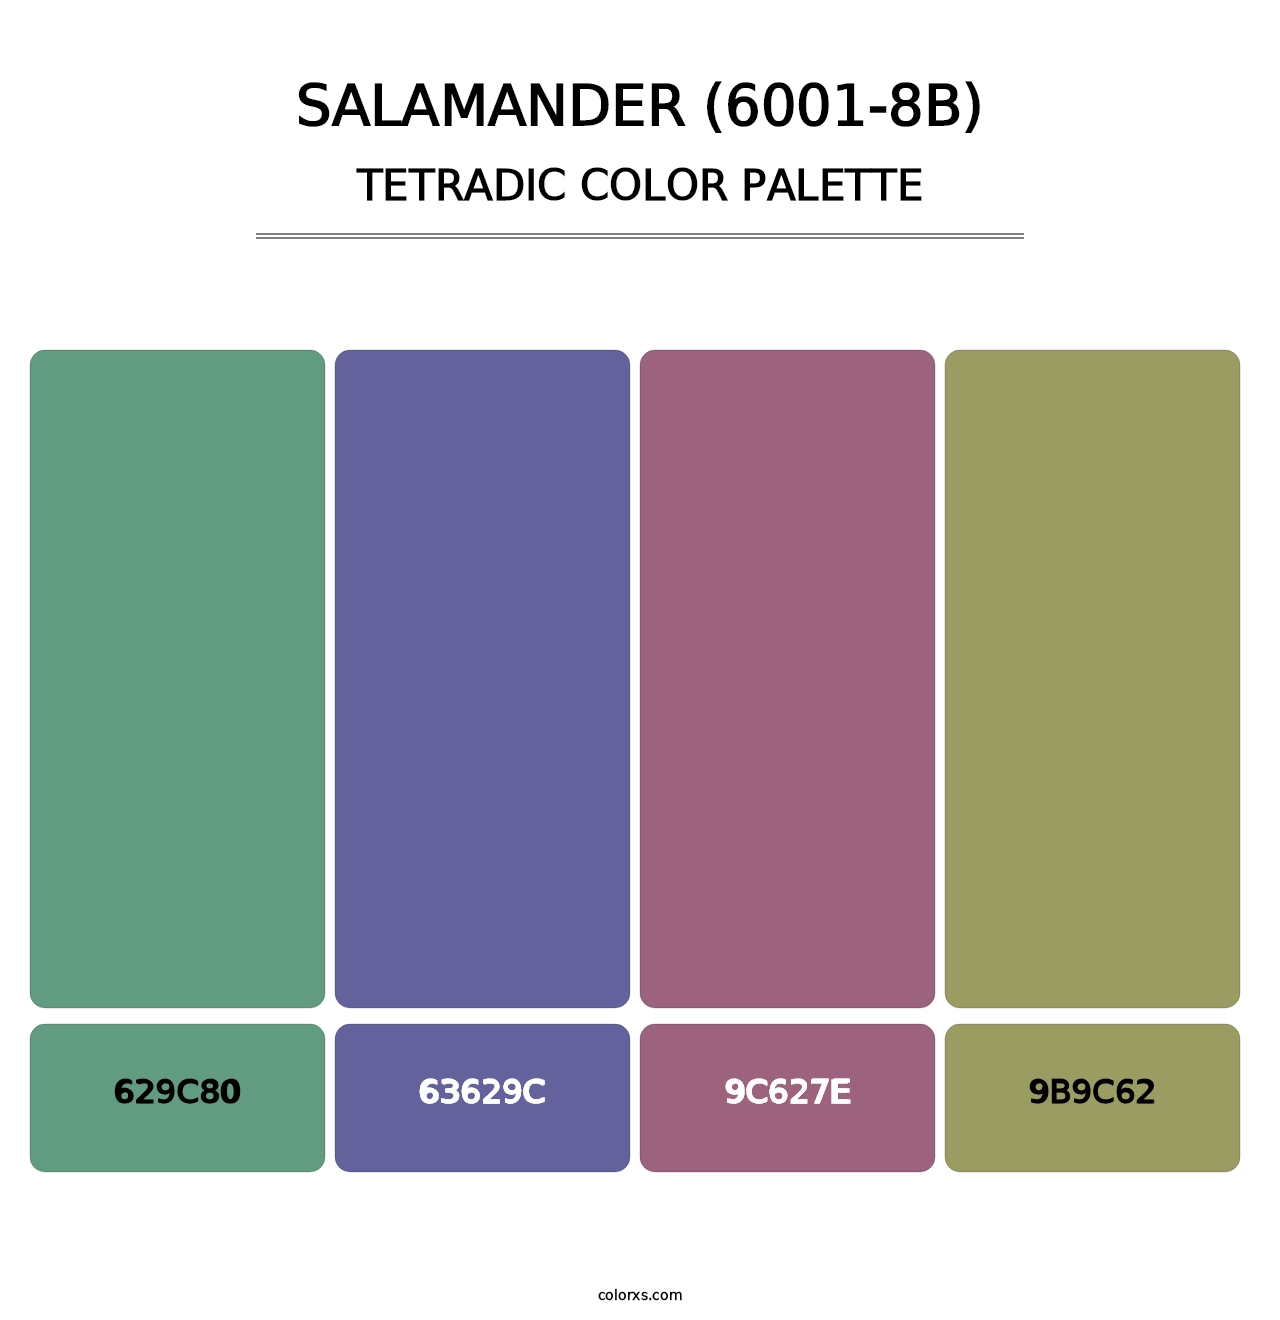 Salamander (6001-8B) - Tetradic Color Palette